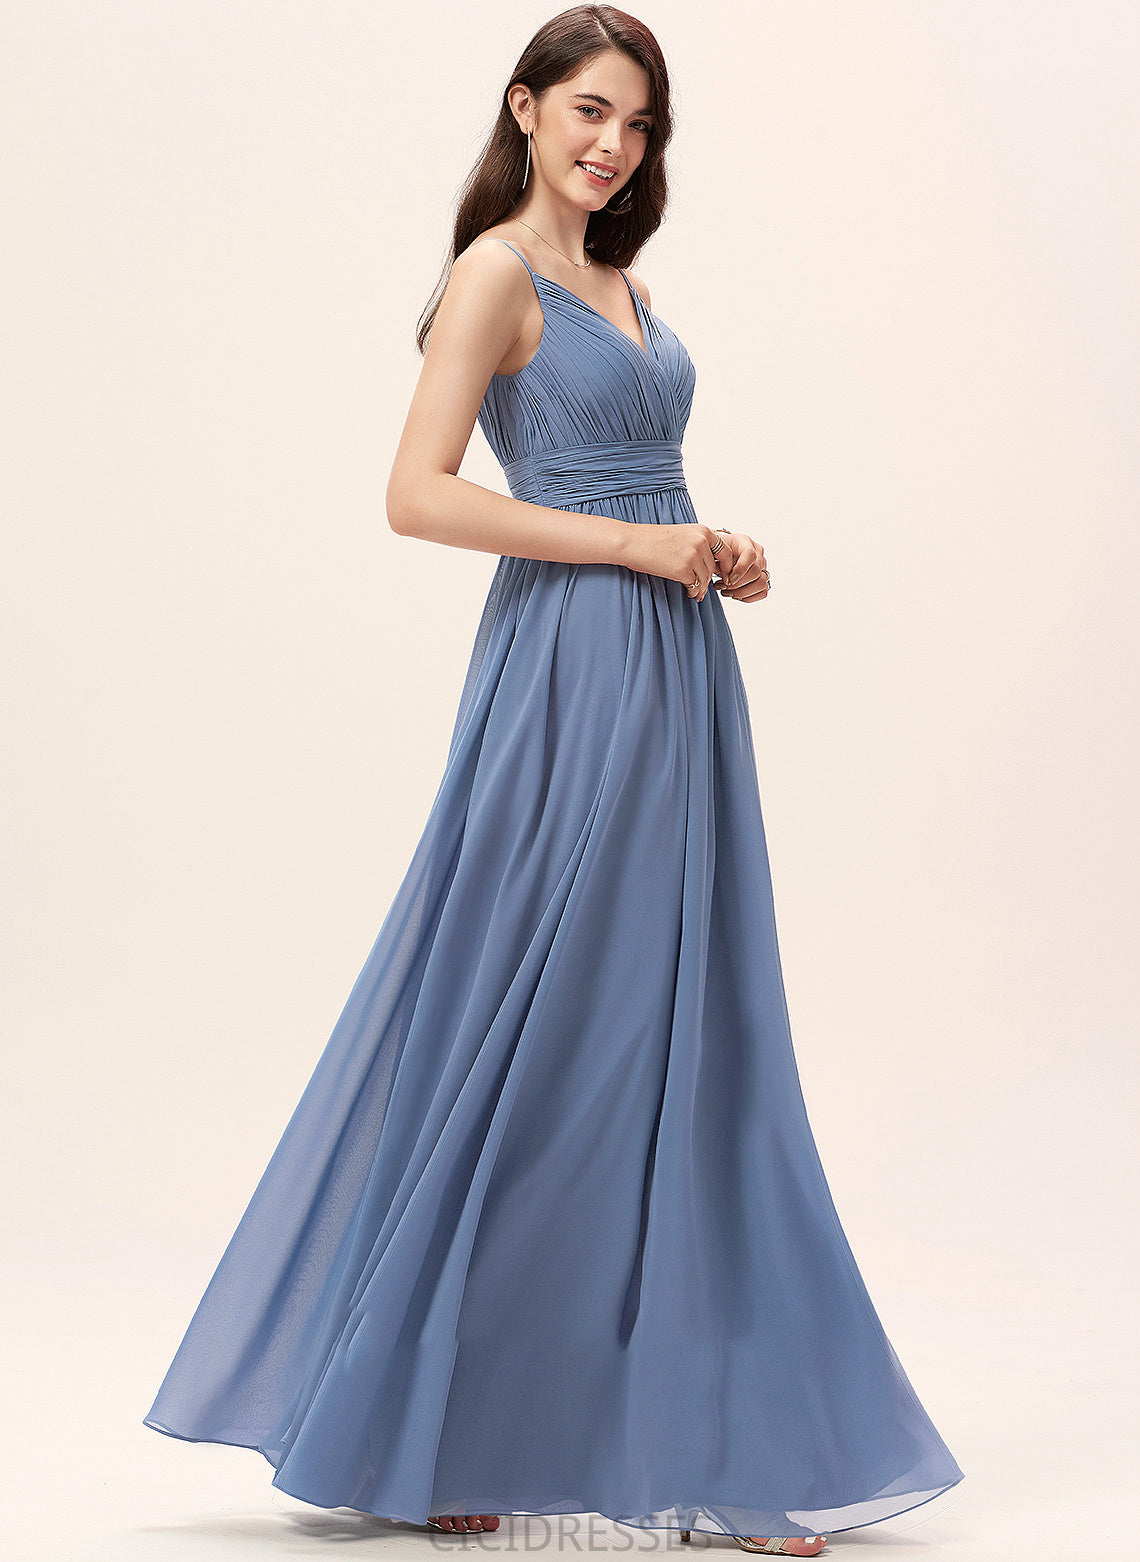 Fabric V-neck Neckline A-Line Floor-Length Silhouette Length Straps Elva V-Neck Sleeveless Natural Waist Bridesmaid Dresses